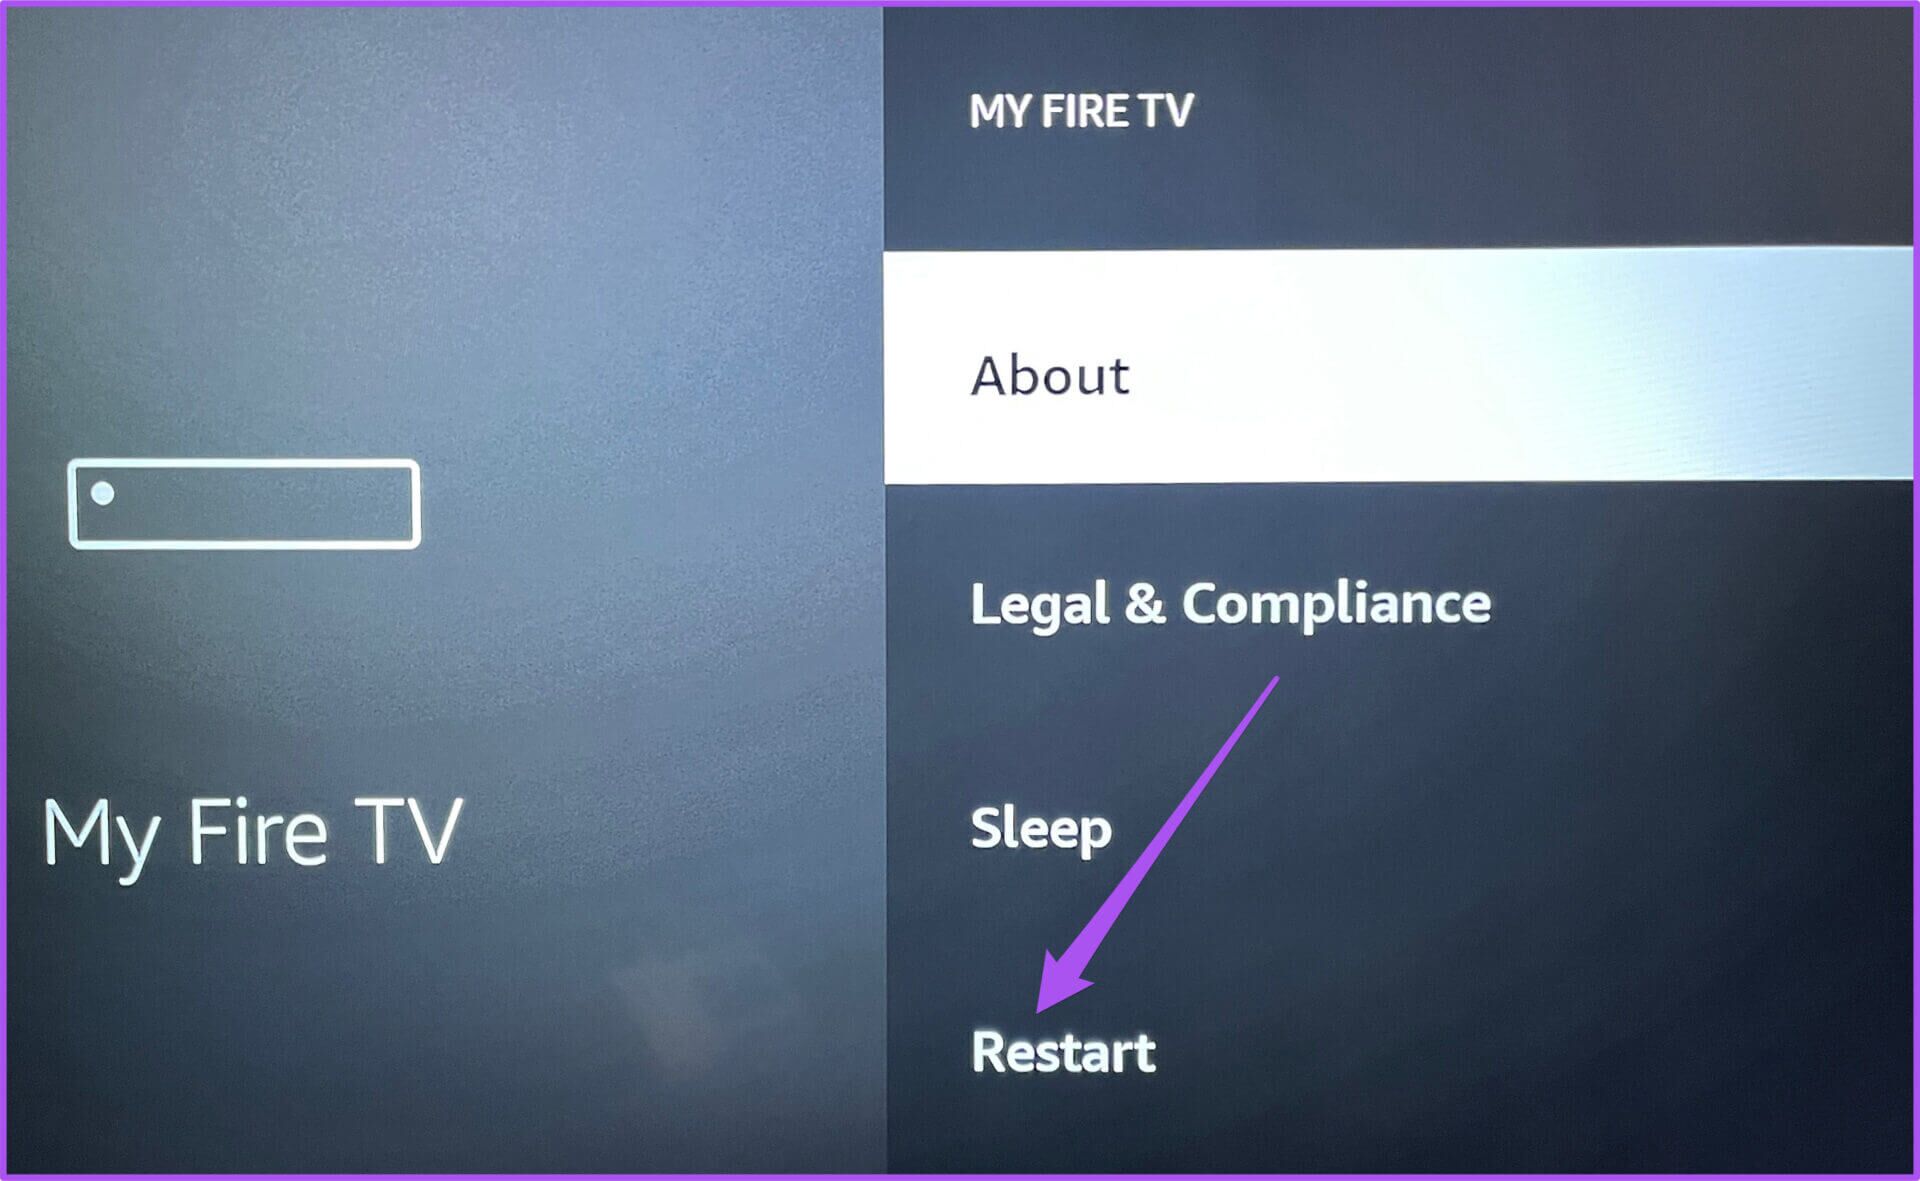 أفضل 7 طرق لإصلاح عدم عمل تطبيق Apple TV على Amazon Fire TV Stick - %categories